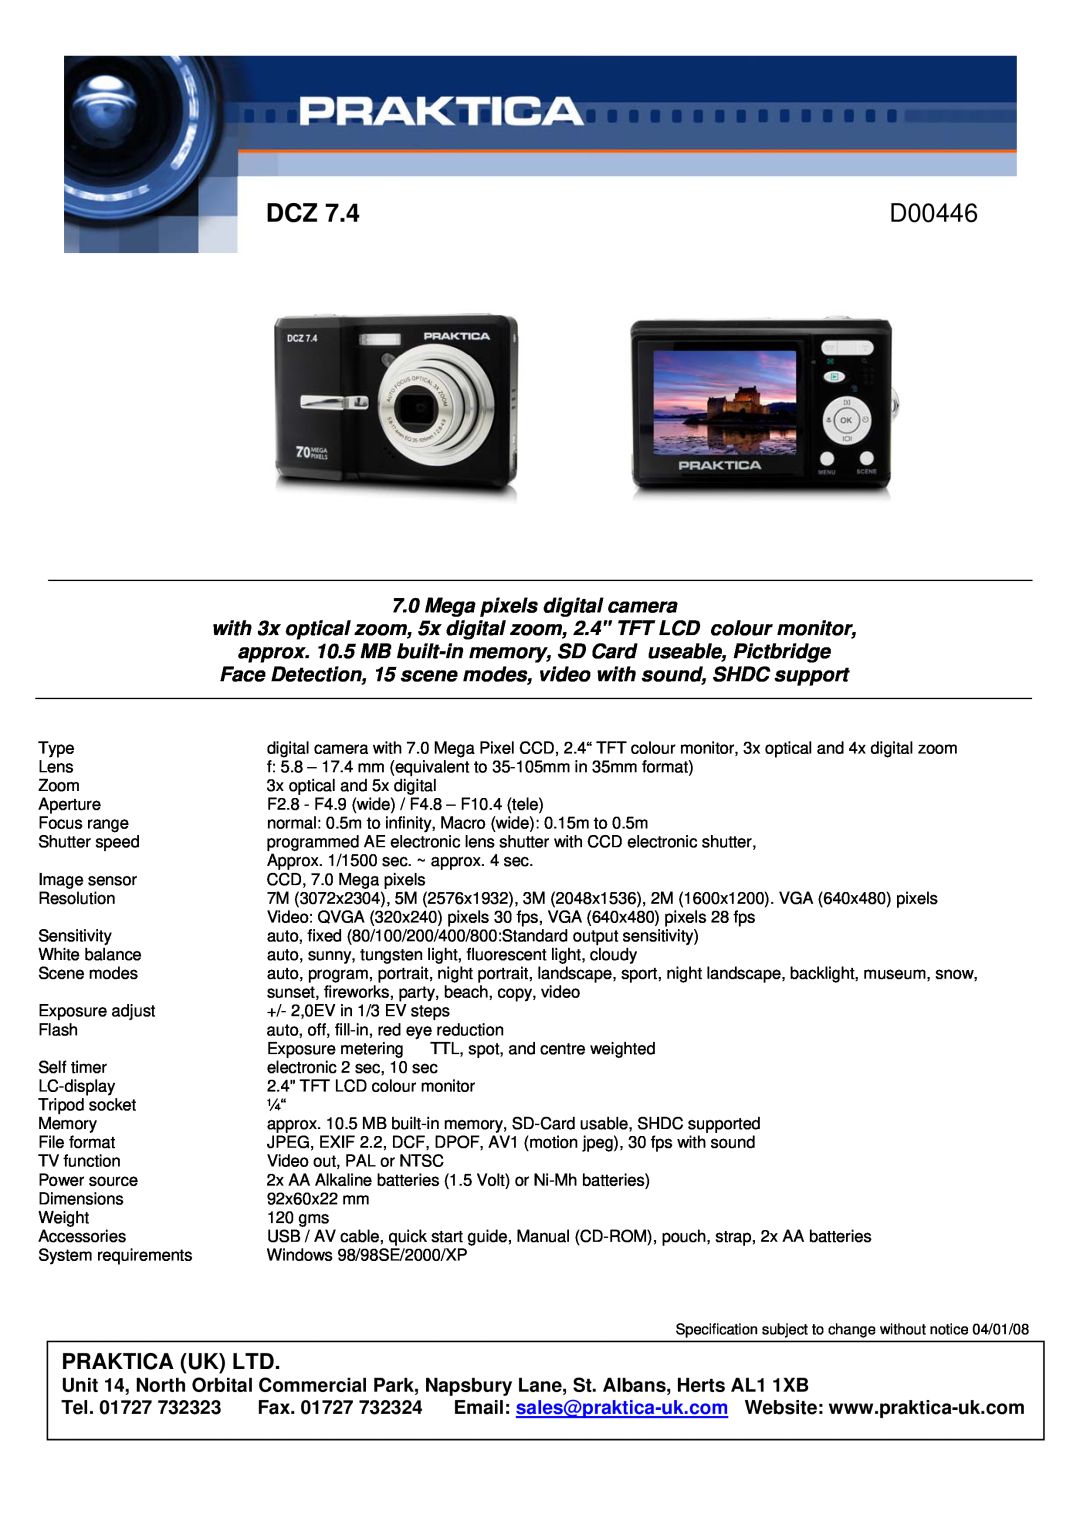 Praktica D00446 manual Praktica Dcz, D00408, Mega pixels digital camera 